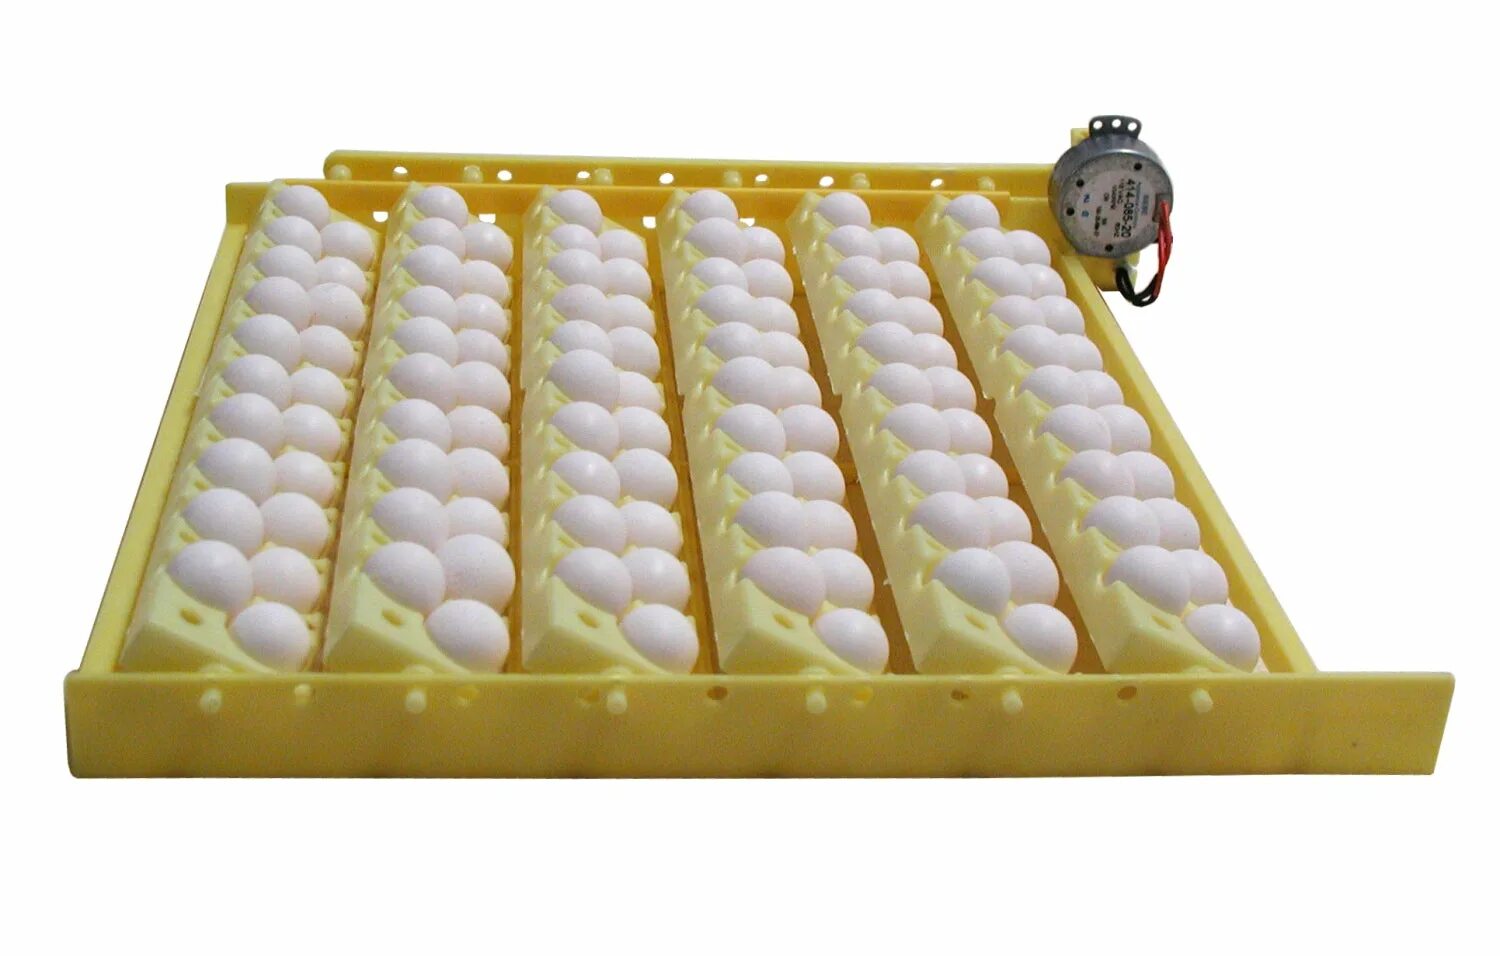 Домашний инкубатор автоматический. Инкубатор Egg incubator. Инкубатор Hova Bator. Инкубатор FLORAFLEX incubator Kit. Инкубатор "WQ-24".